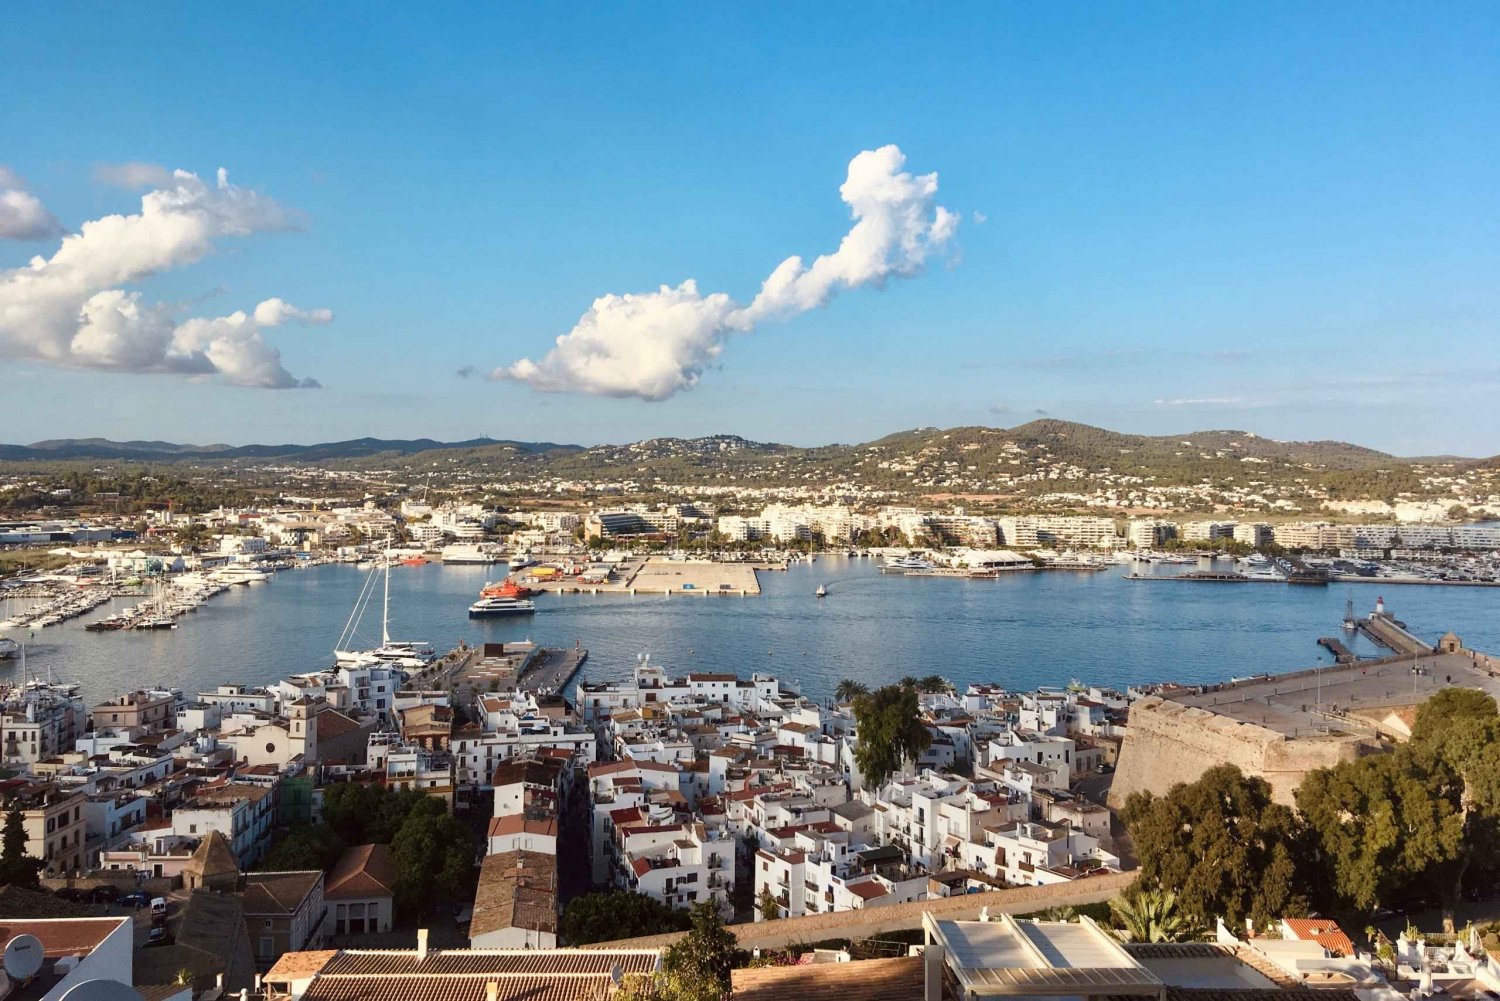 Ibiza: excursão a pé guiada pela cidade velha